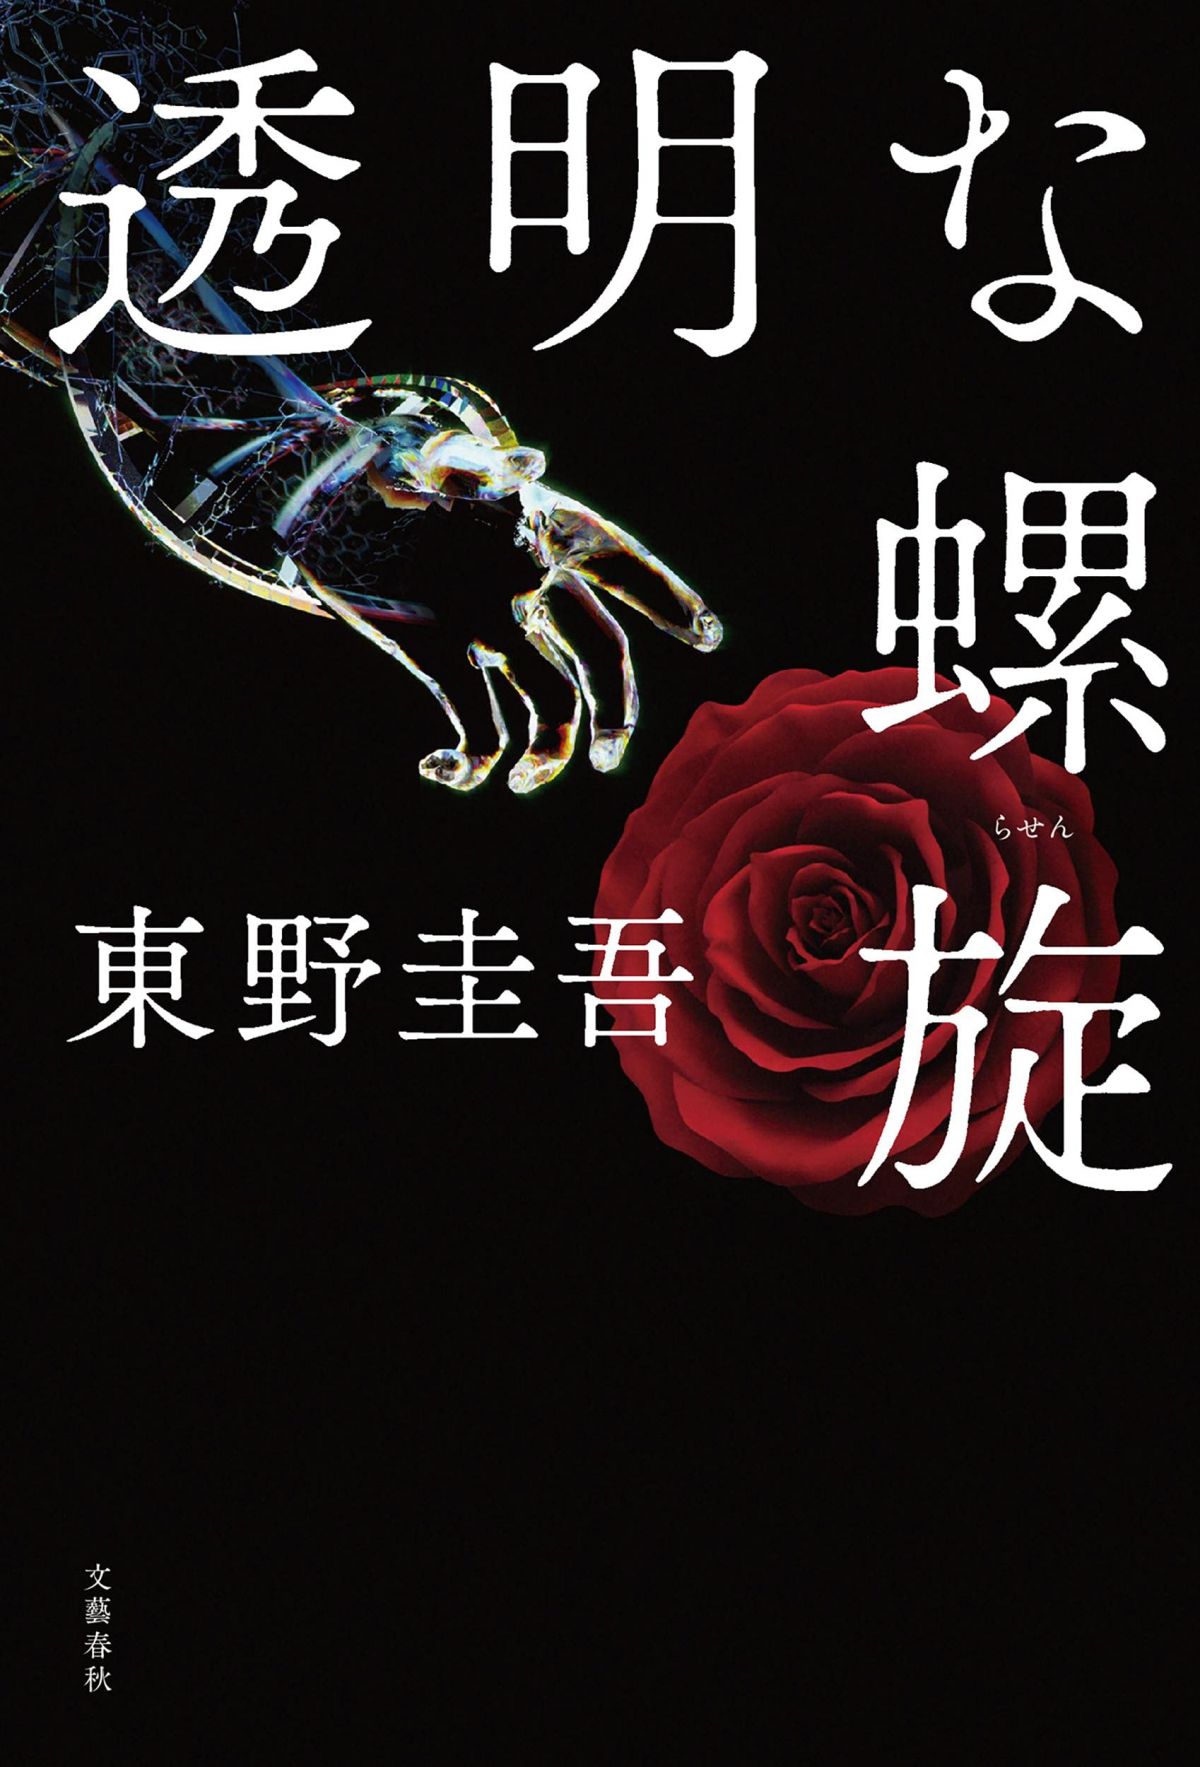 東野圭吾の人気シリーズ最新作『透明な螺旋』――ガリレオファンは驚くはず。東野ファンはもっと驚く……シリーズ最大の秘密とは？ | ダ・ヴィンチWeb